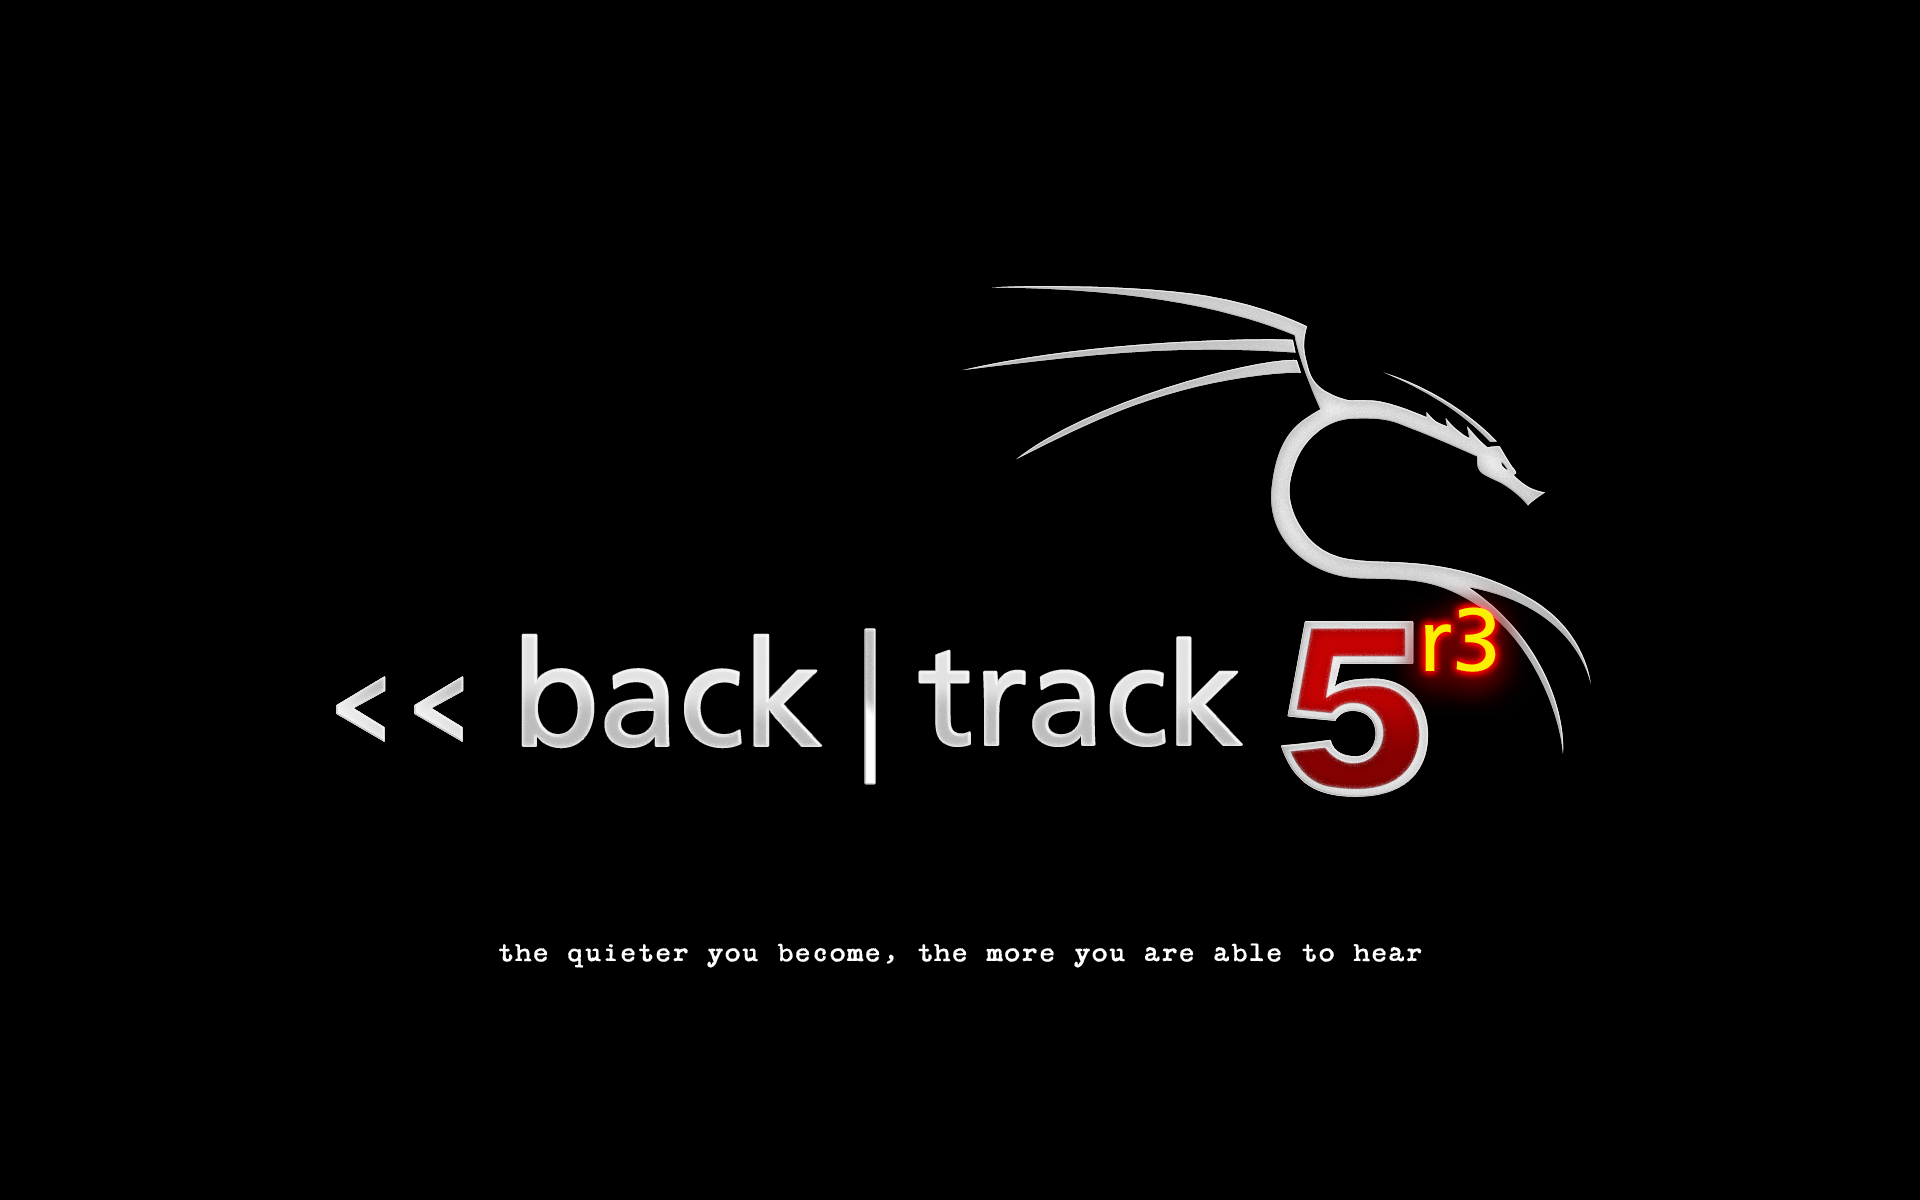 backtrack-5r3-black.png